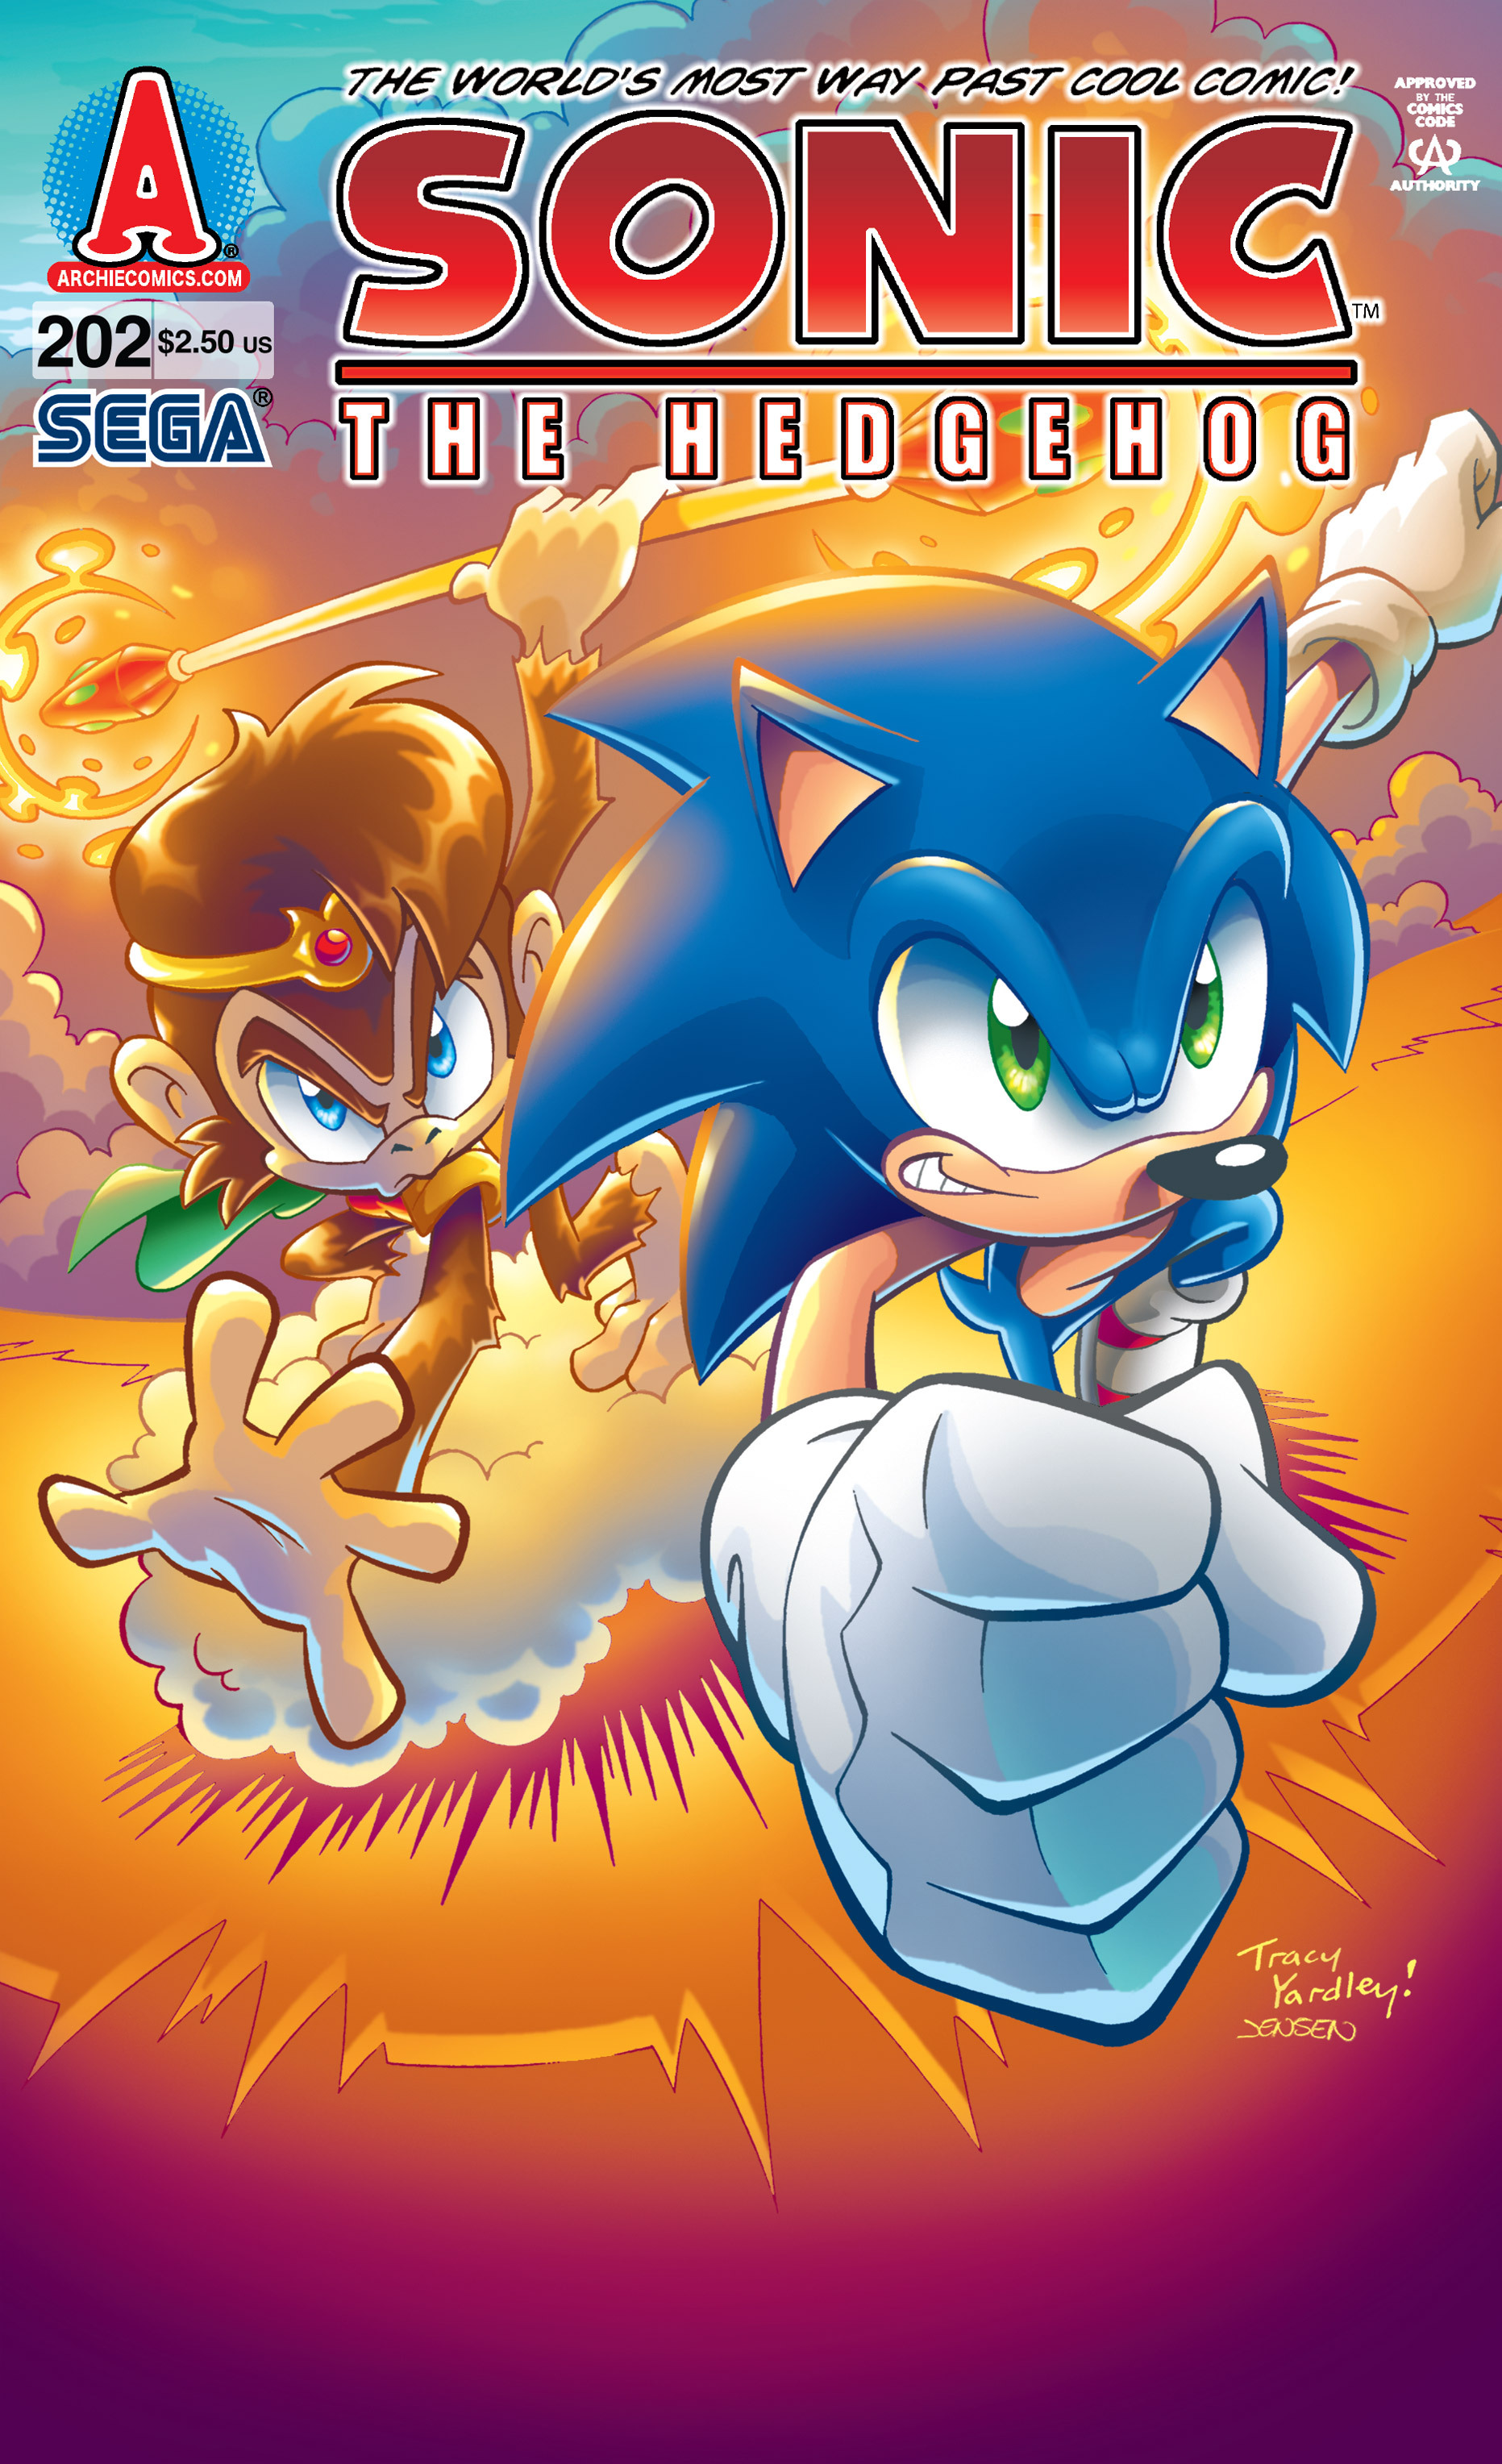 Tracy Yardley's artwork of Darkspine Sonic! : r/SonicTheHedgehog